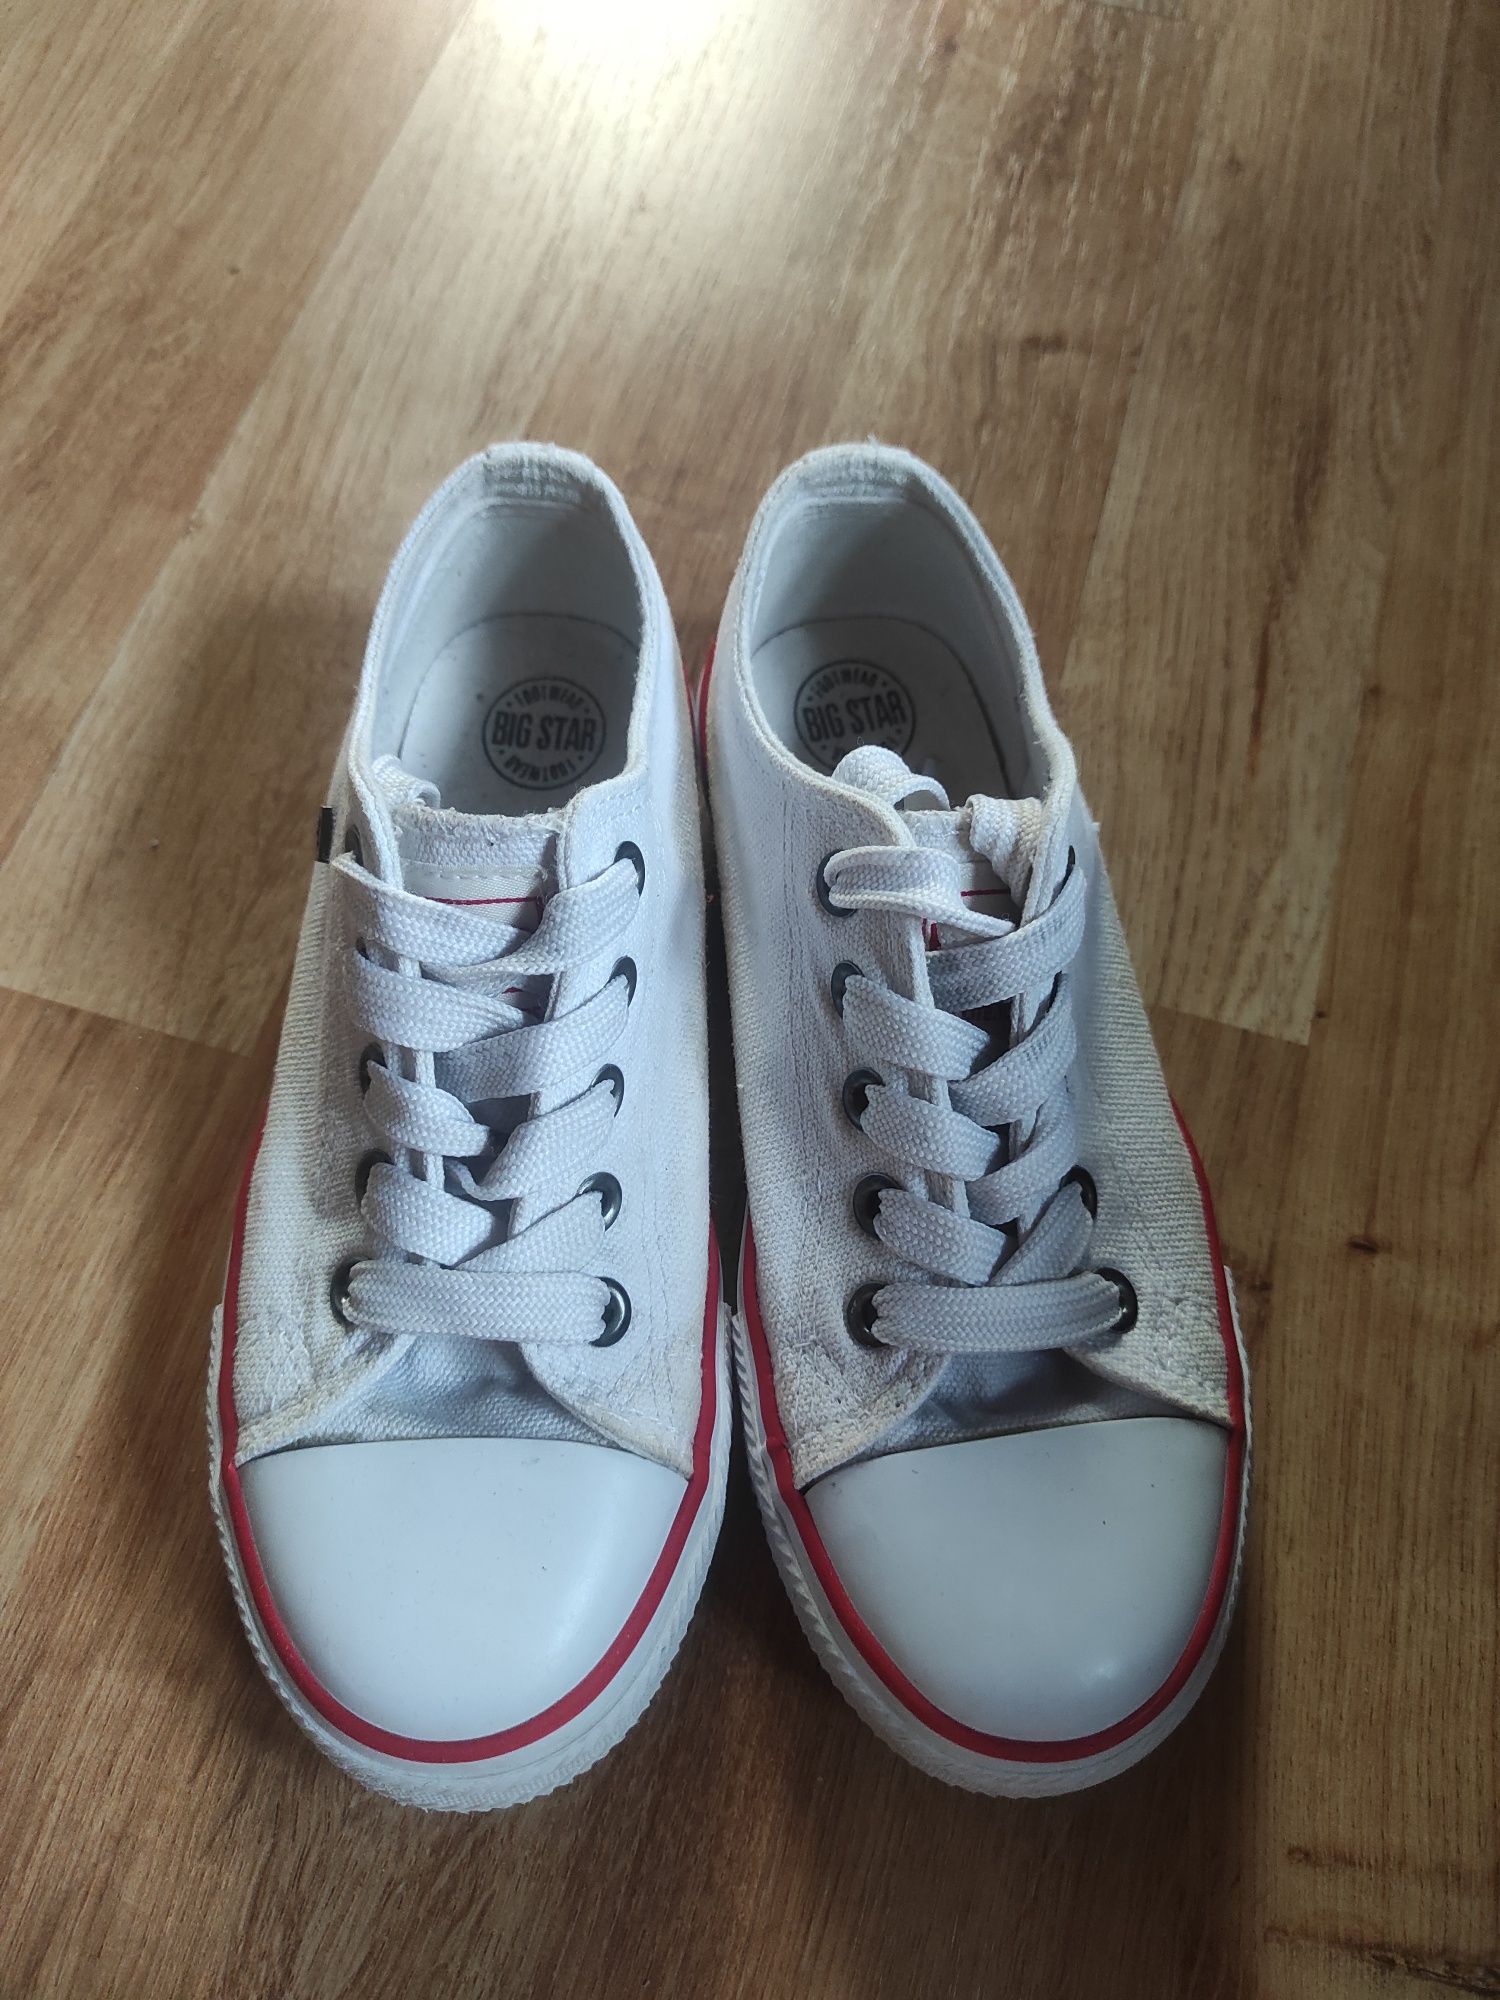 Białe buty trampki big star rozmiar 32 chłopięce dziewczęce unisex